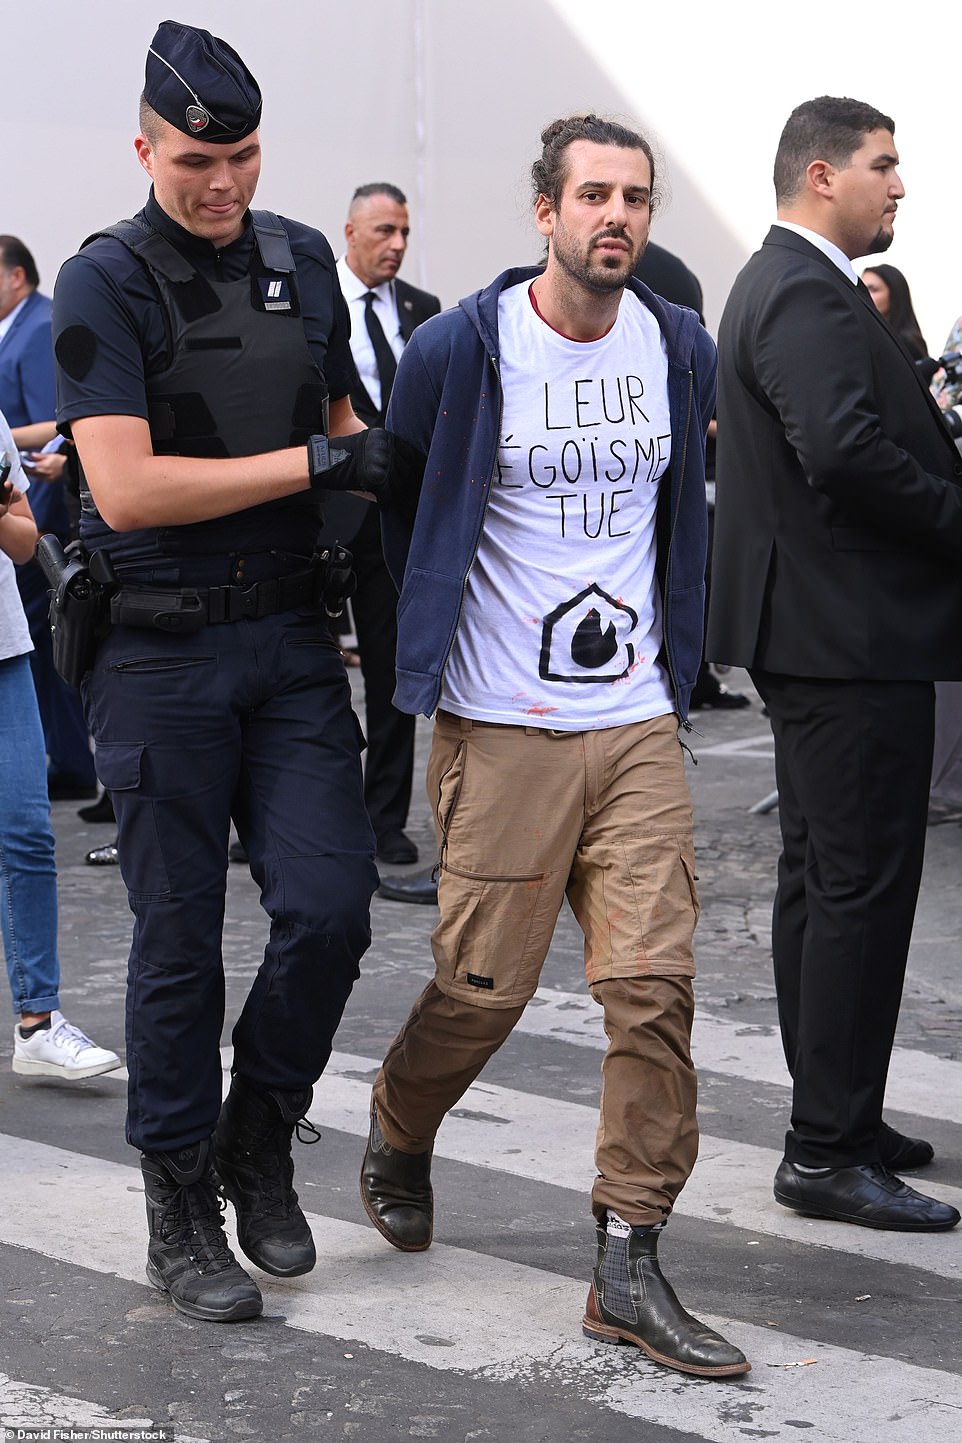 Protest: Auf dem Bild wurde ein Demonstrant von der Polizei abgeführt, nachdem vor der Louis Vuitton Show orangefarbene Farbe geworfen wurde